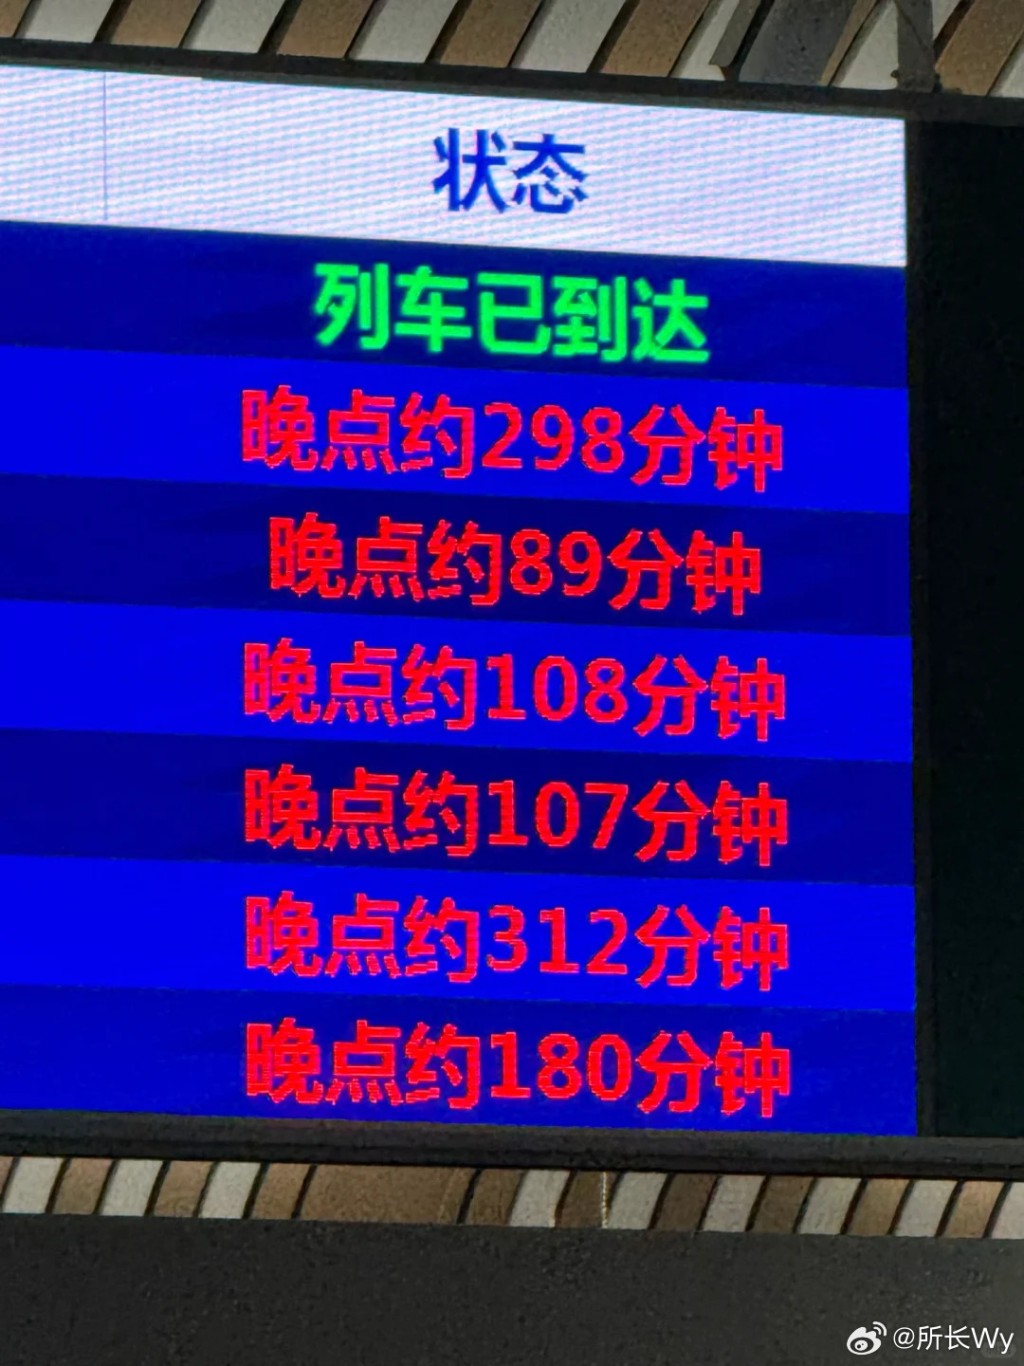 湖南、广东多地暴雨，影响京广、京九多班列车延迟或停驶。